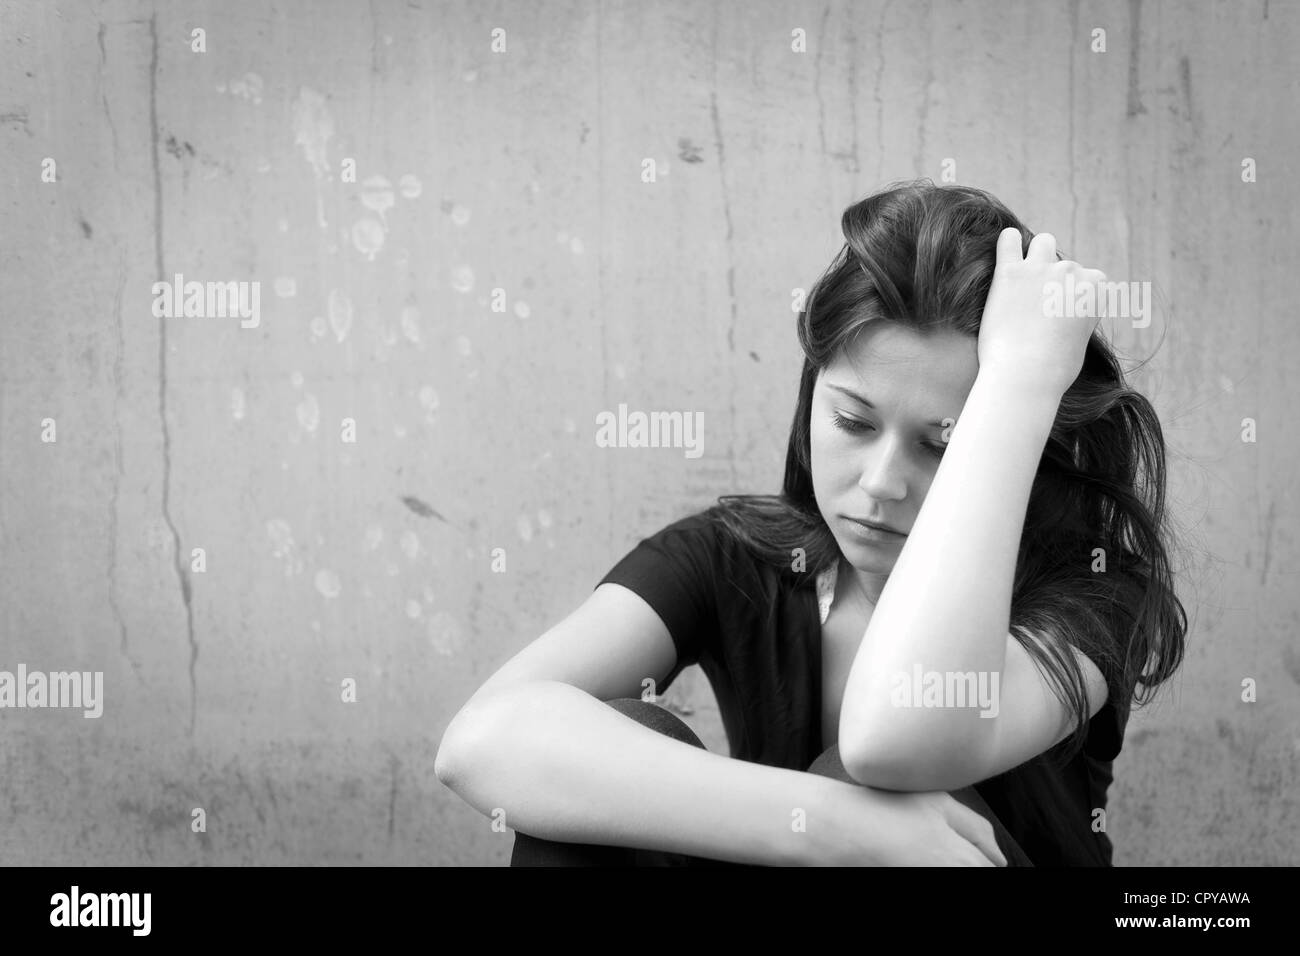 Portrait en extérieur d'un sad woman réfléchie des troubles, photo monochrome Banque D'Images